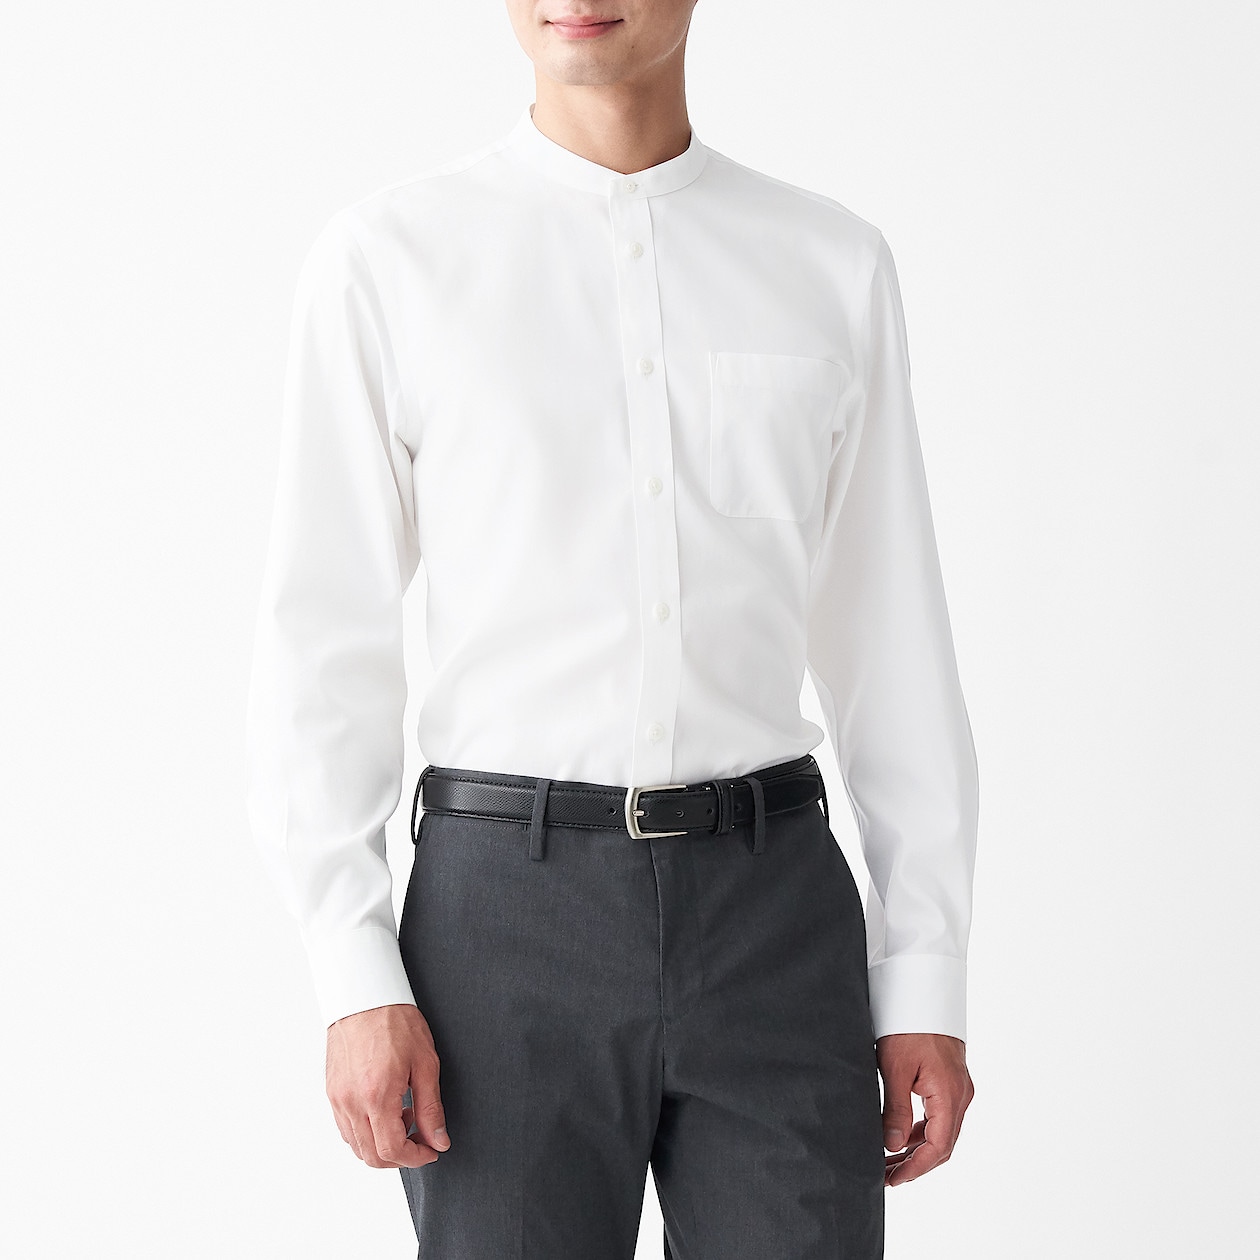 アイロンがけのいらないスタンドカラーシャツ 紳士ｌ 白 シャツ ワイシャツ 長袖 紳士 メンズ 通販 無印良品